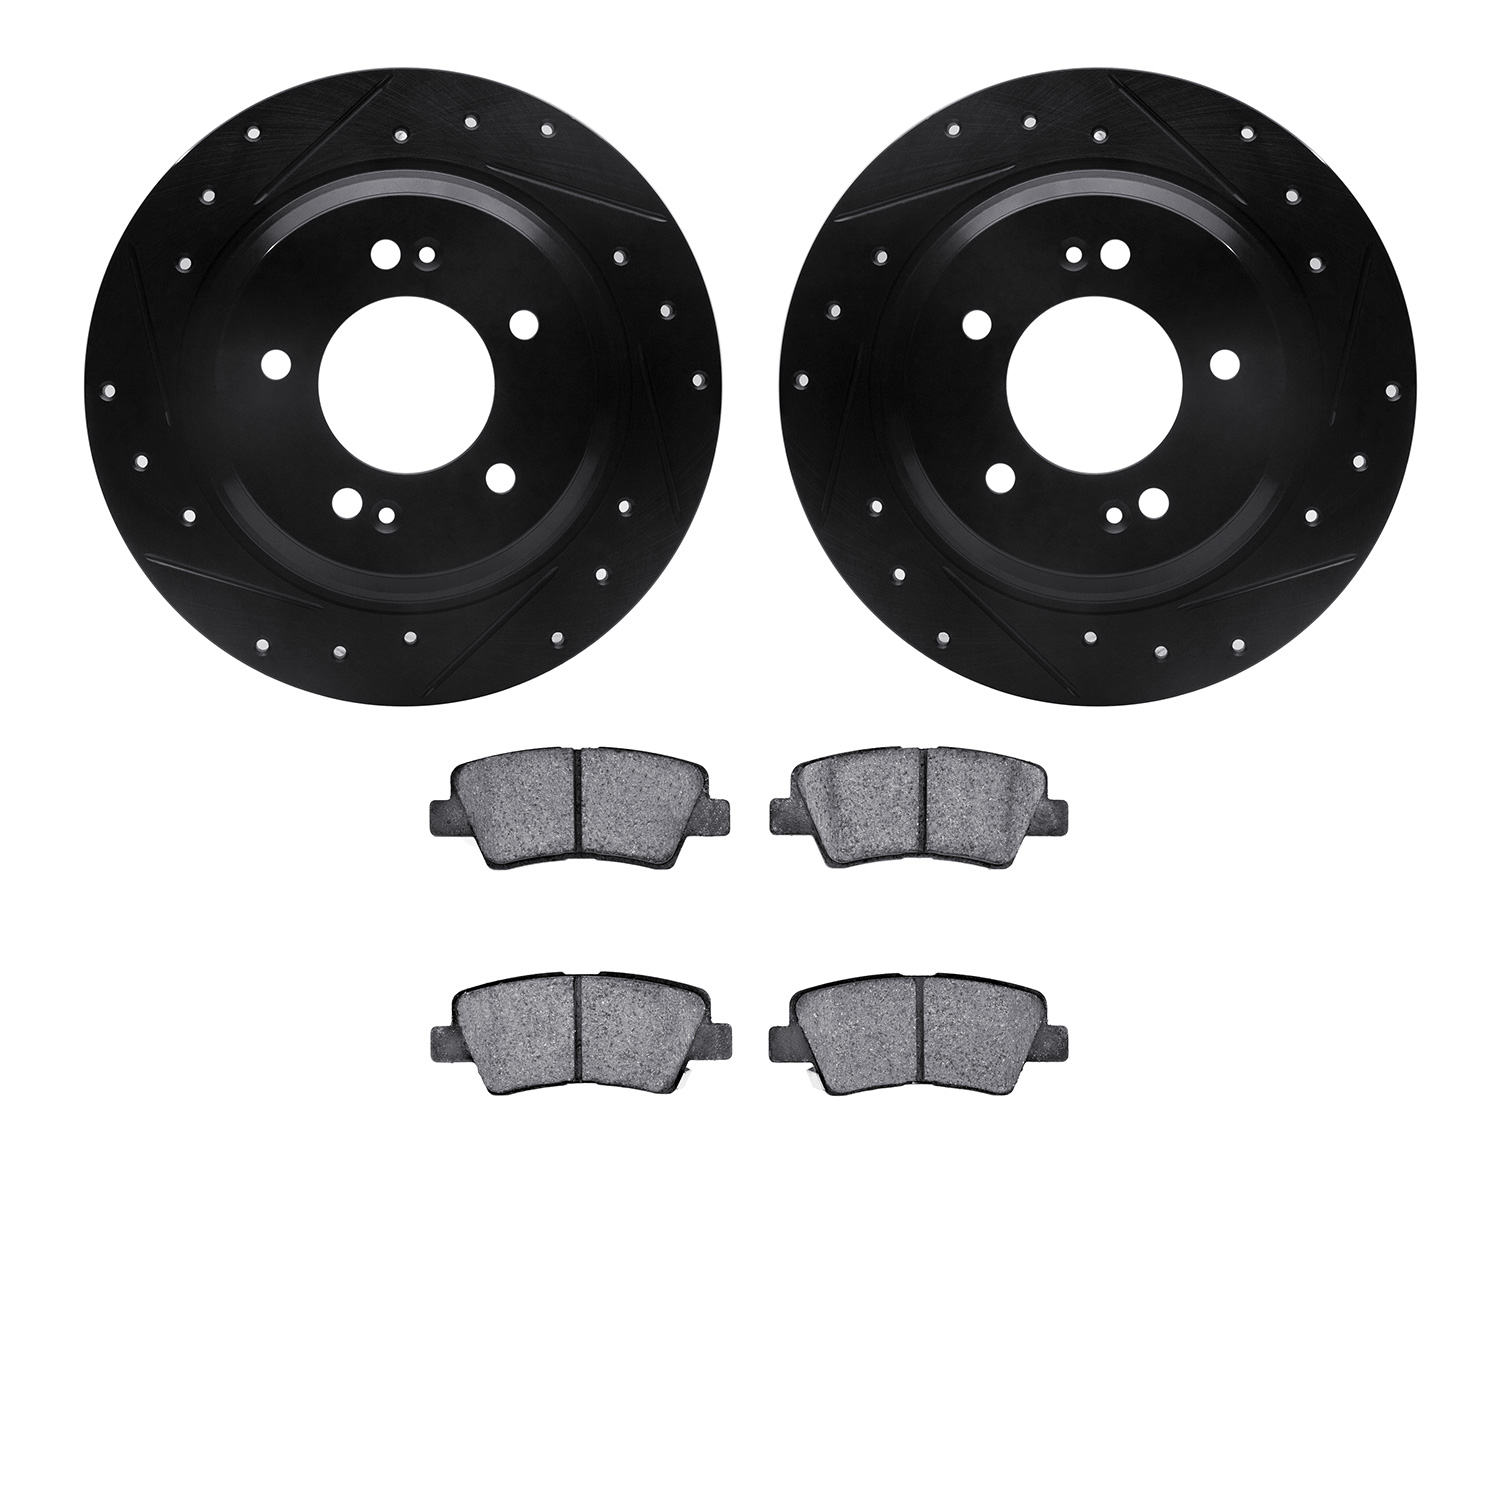 8302-21033 Drilled/Slotted Brake Rotors with 3000-Series Ceramic Brake Pads Kit [Black], Fits Select Kia/Hyundai/Genesis, Positi